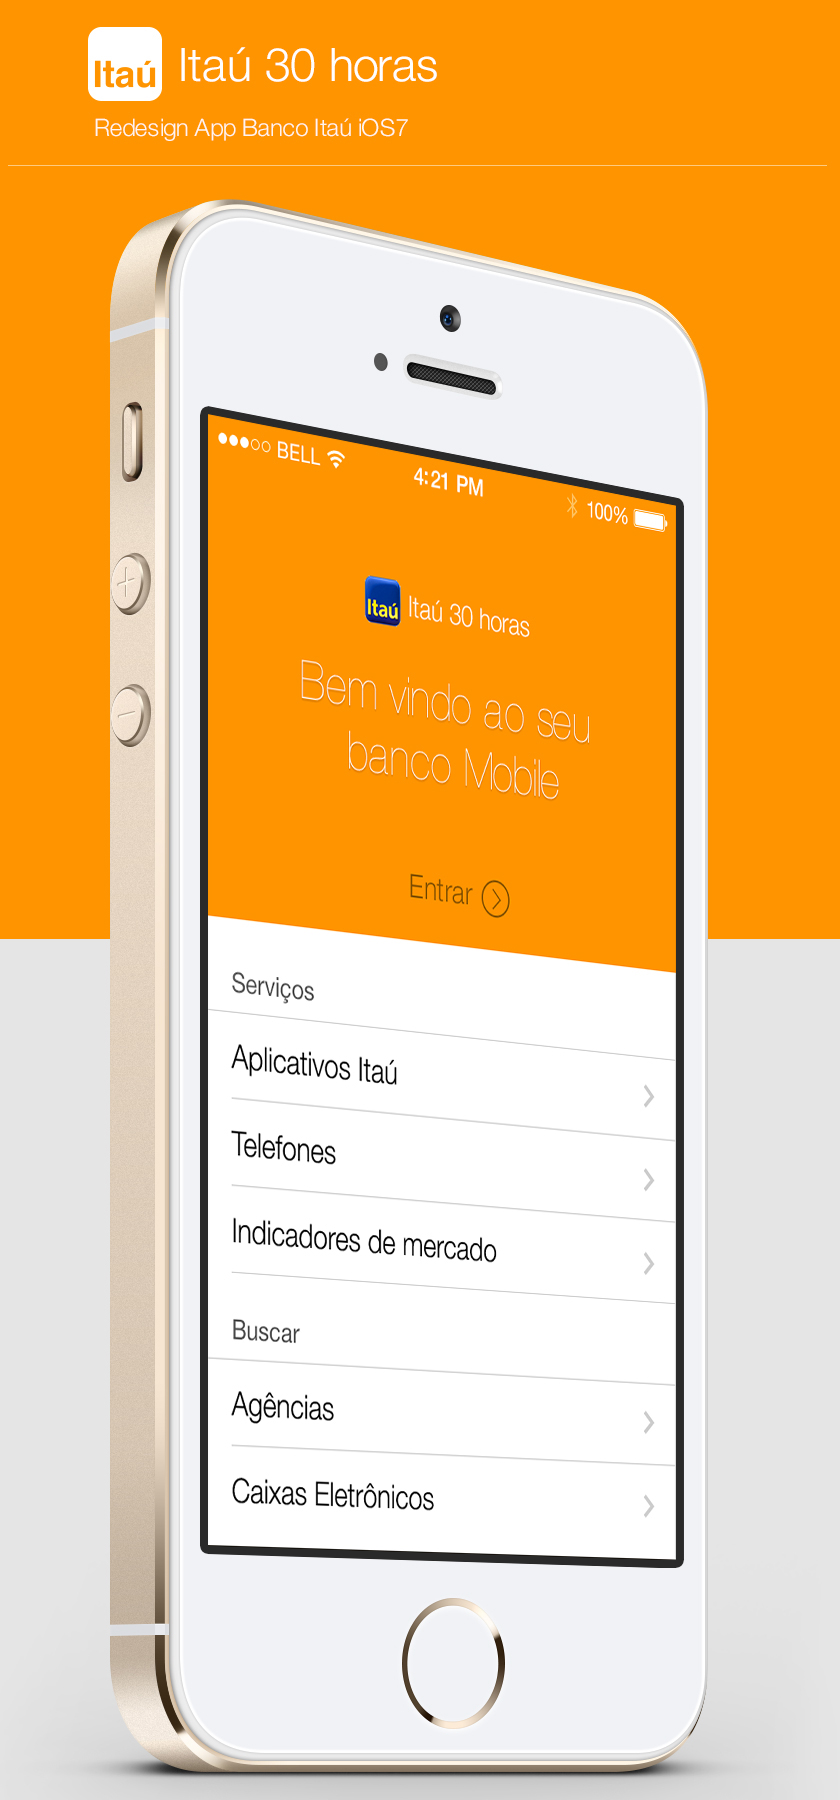 Redesign do aplicativo do Banco Itaú para iOS7